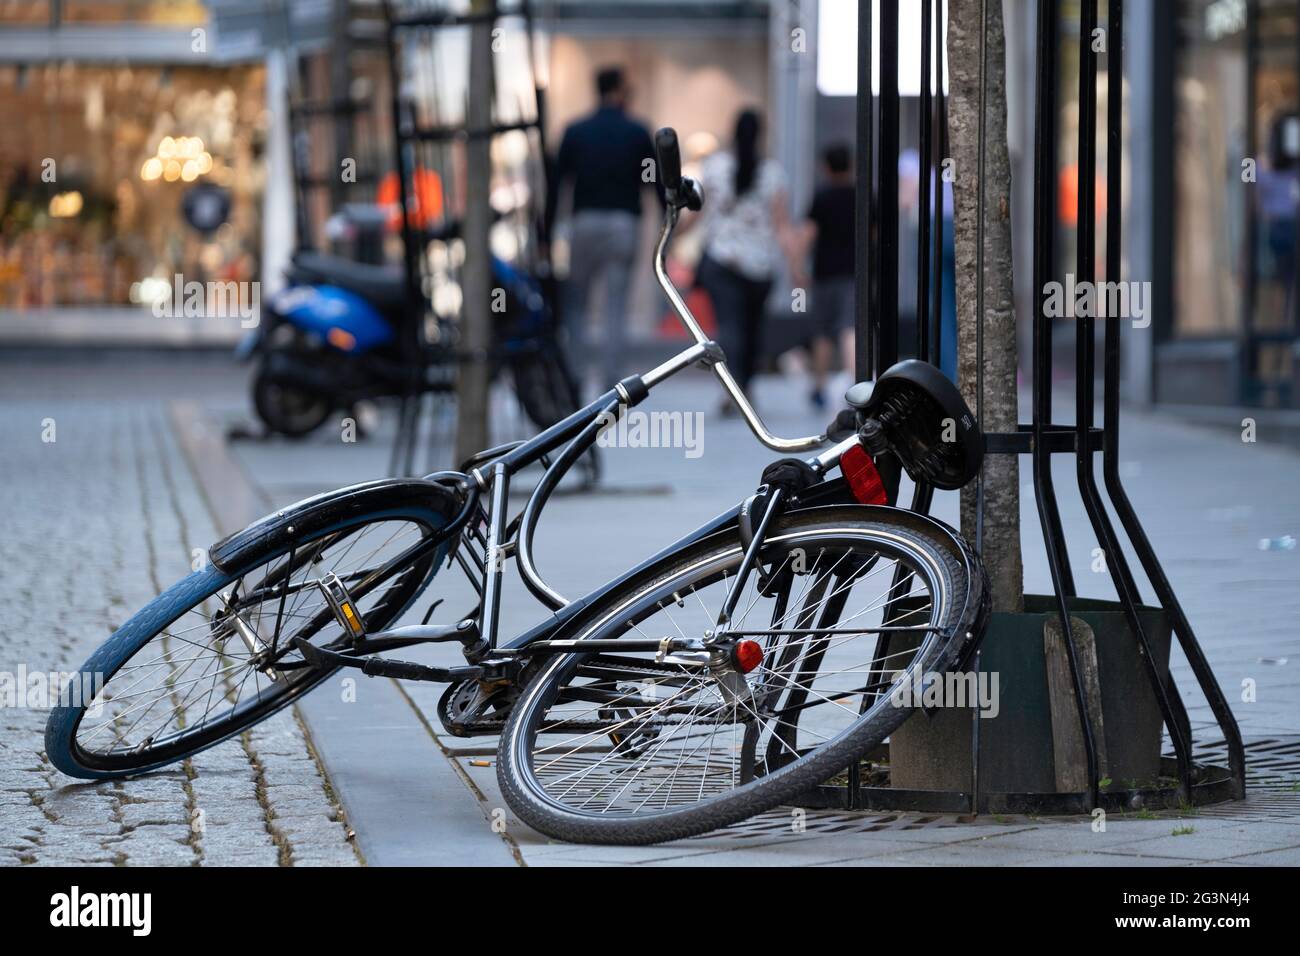 La bicyclette noire est à moitié sur le sol et à moitié contre un arbre dans une rue commerçante, garée sans prudence ou retournée. Vélo tombé dans la rue Banque D'Images